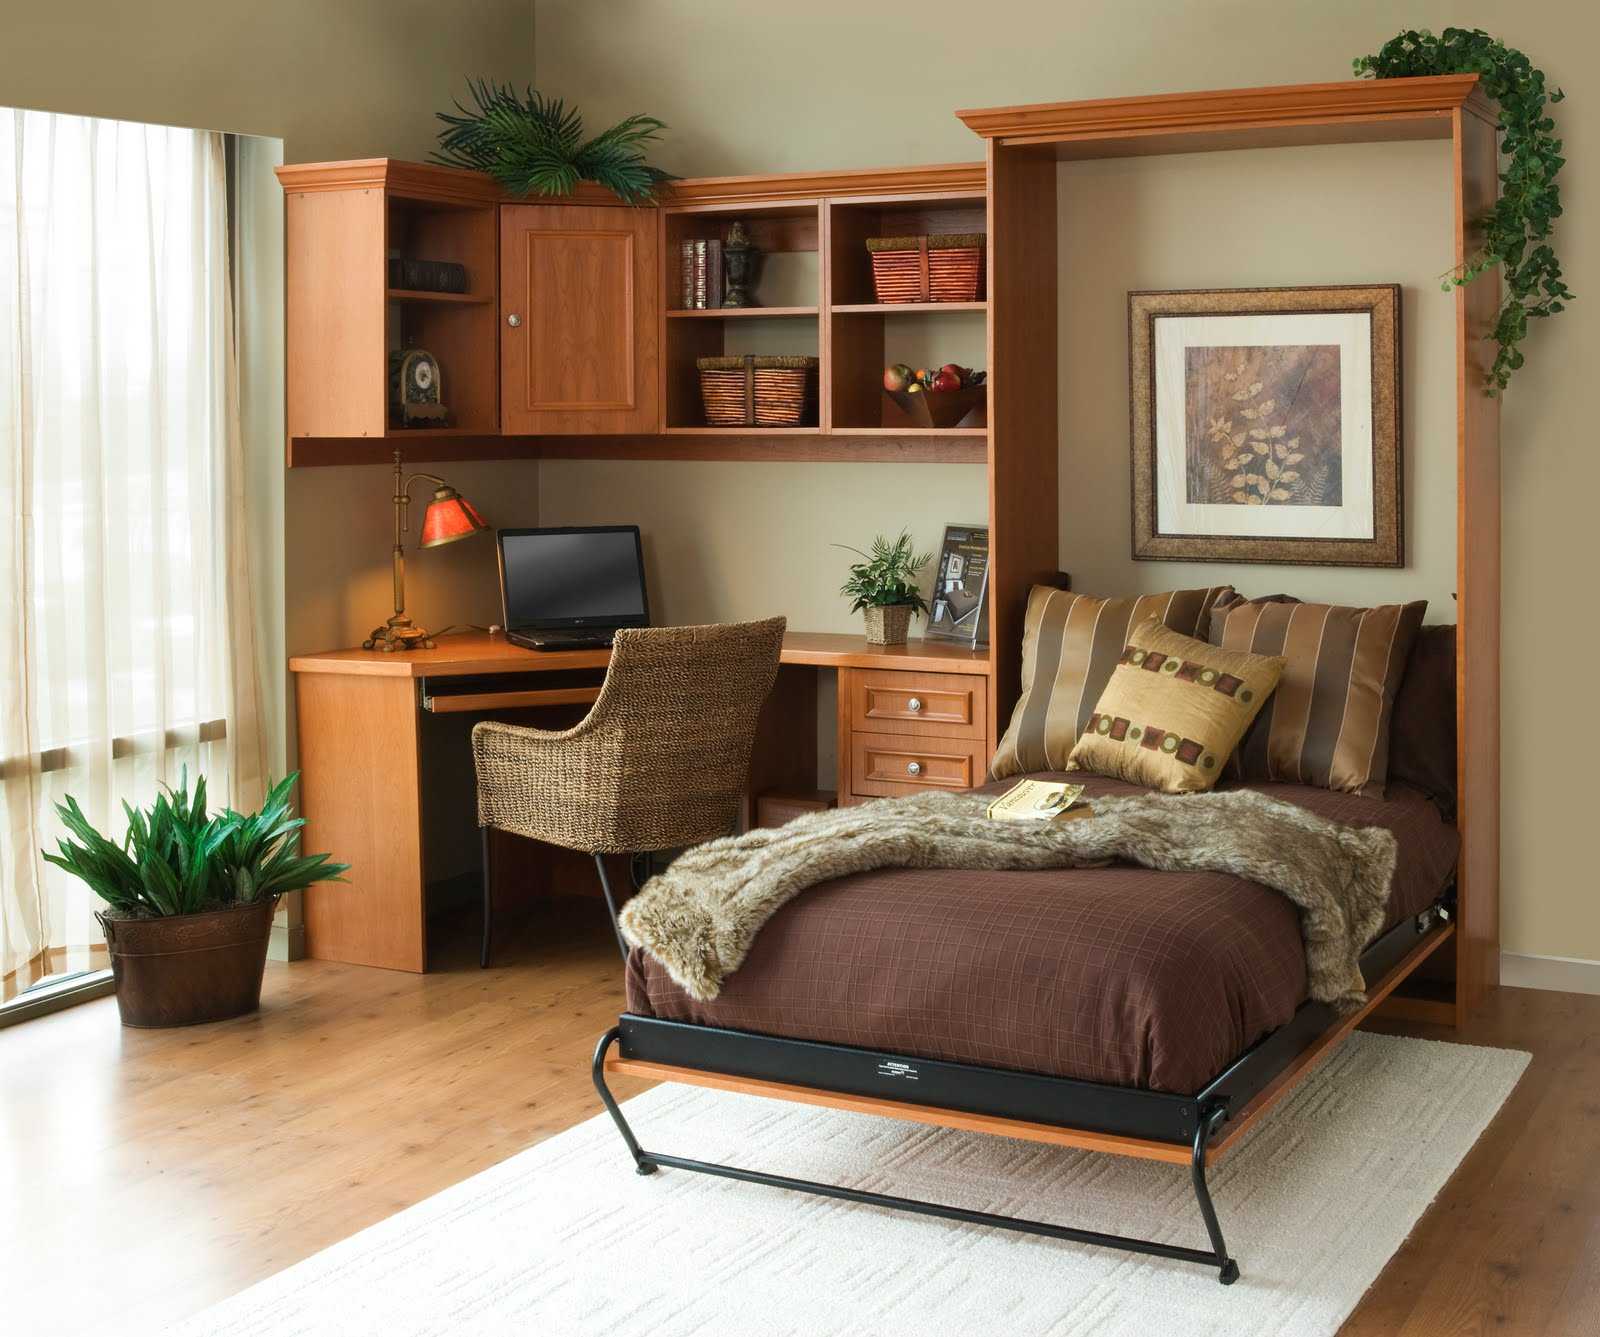 Расстановка мебели в маленькой квартире: практичный дизайн